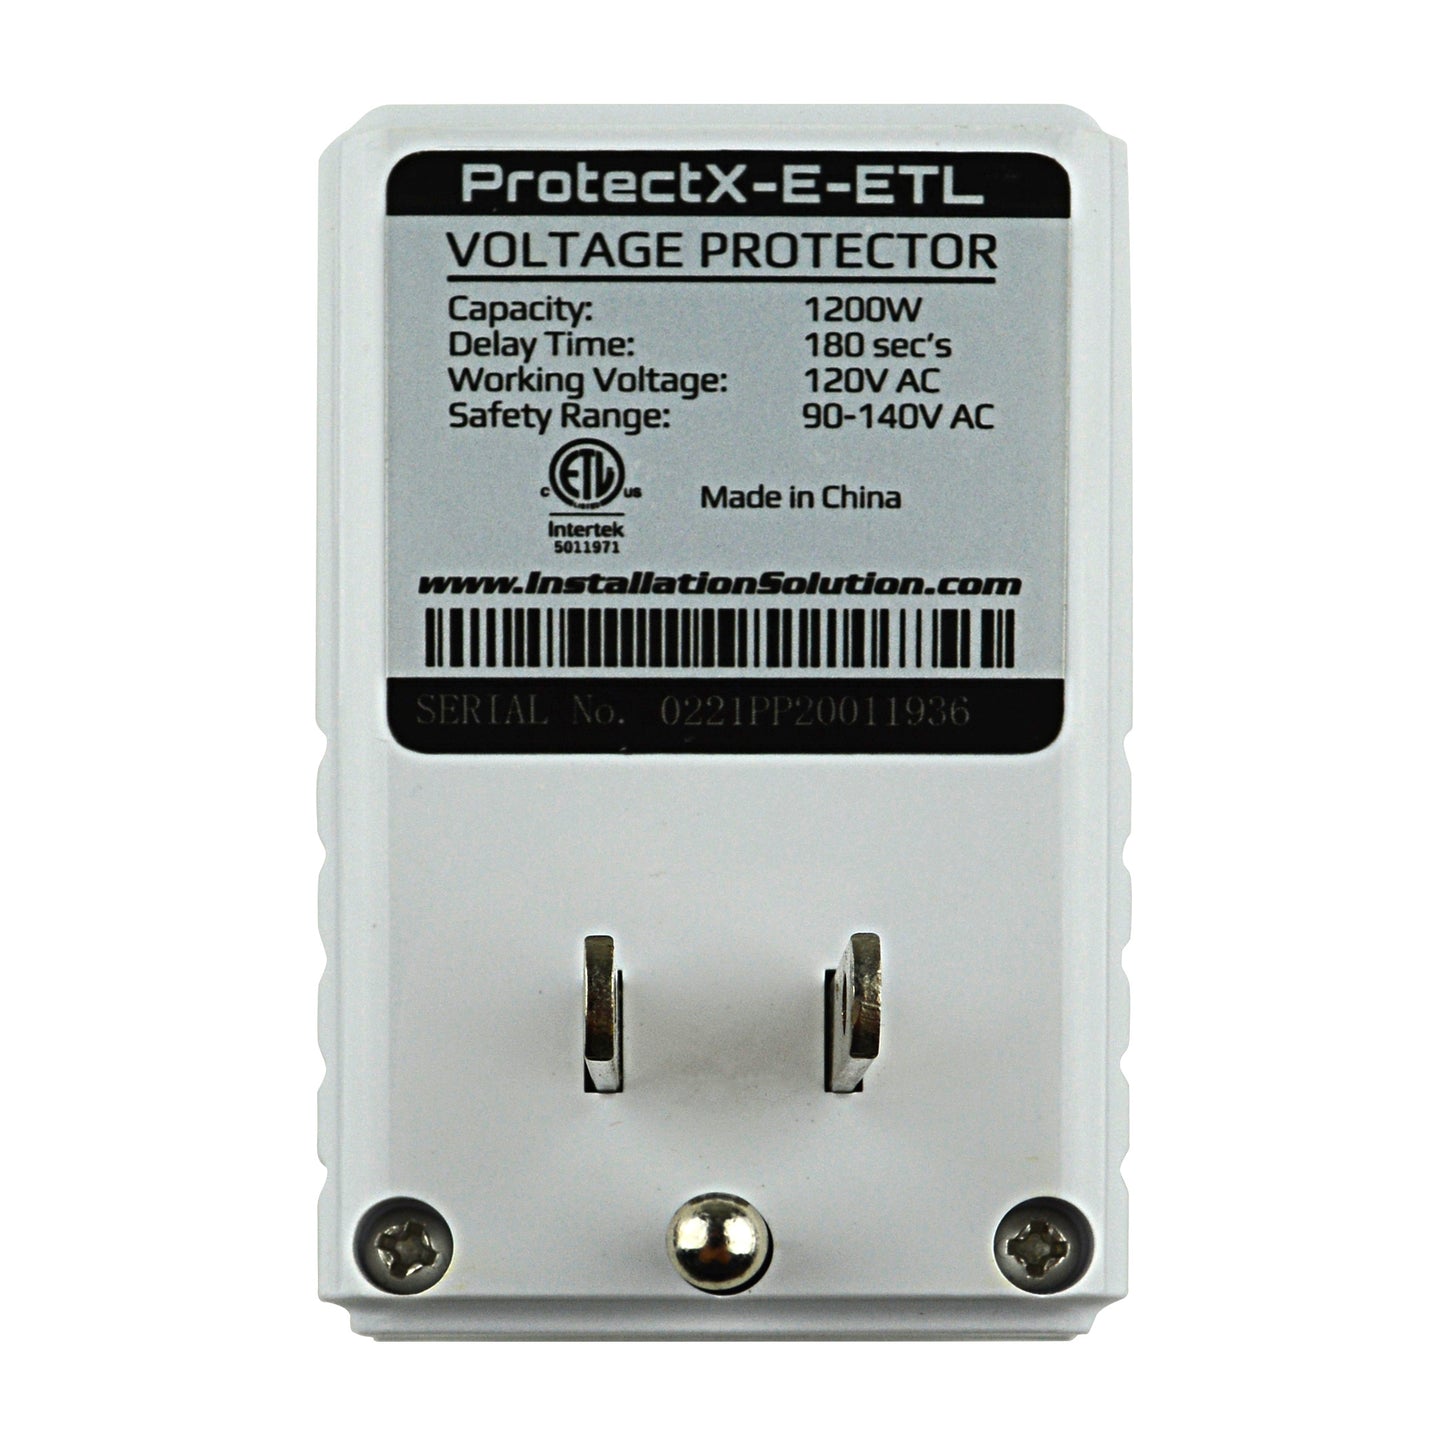 PROTECTX-E-ETL Voltage Protector